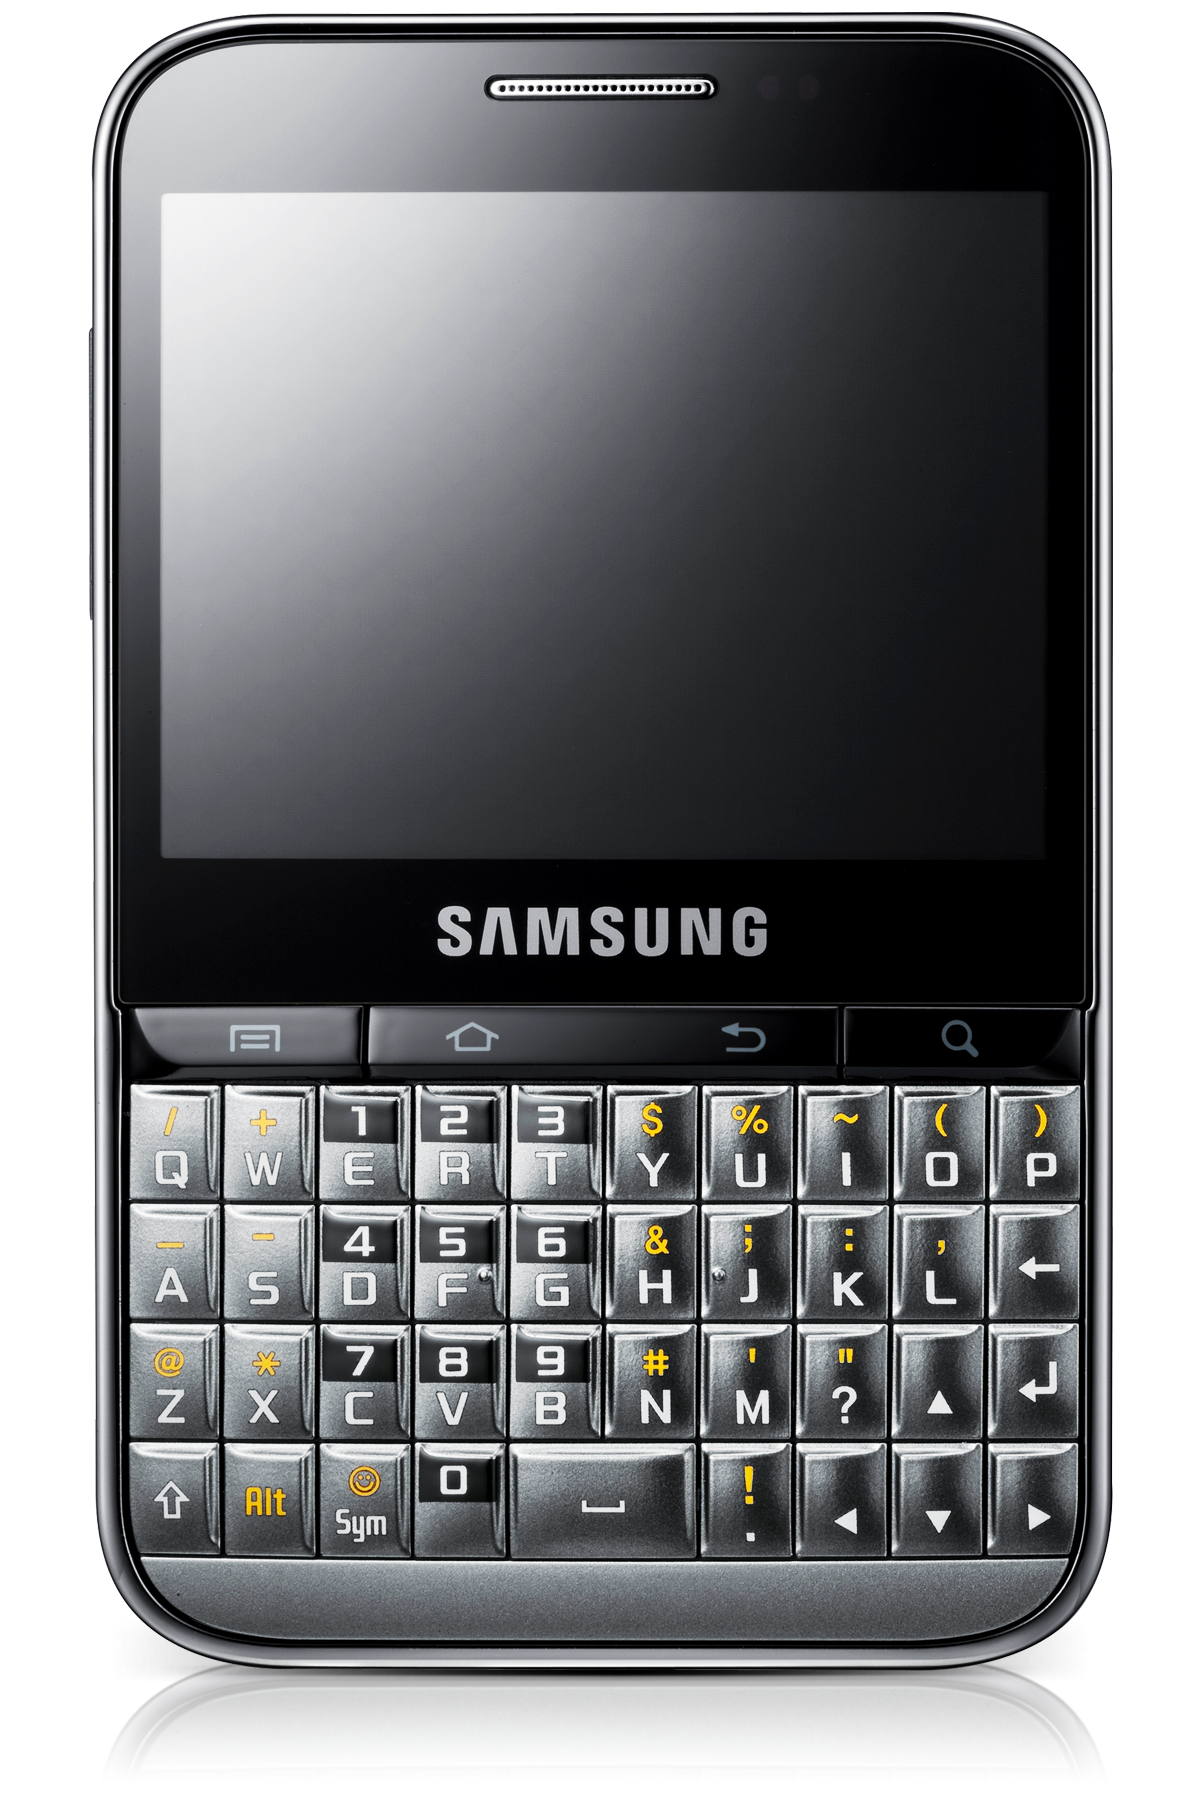 Кнопочный андроид без камеры. Samsung Galaxy Pro b7510. Samsung Galaxy Pro gt-b7510. Samsung Galaxy Pro 7510. Samsung с кверти клавиатурой.